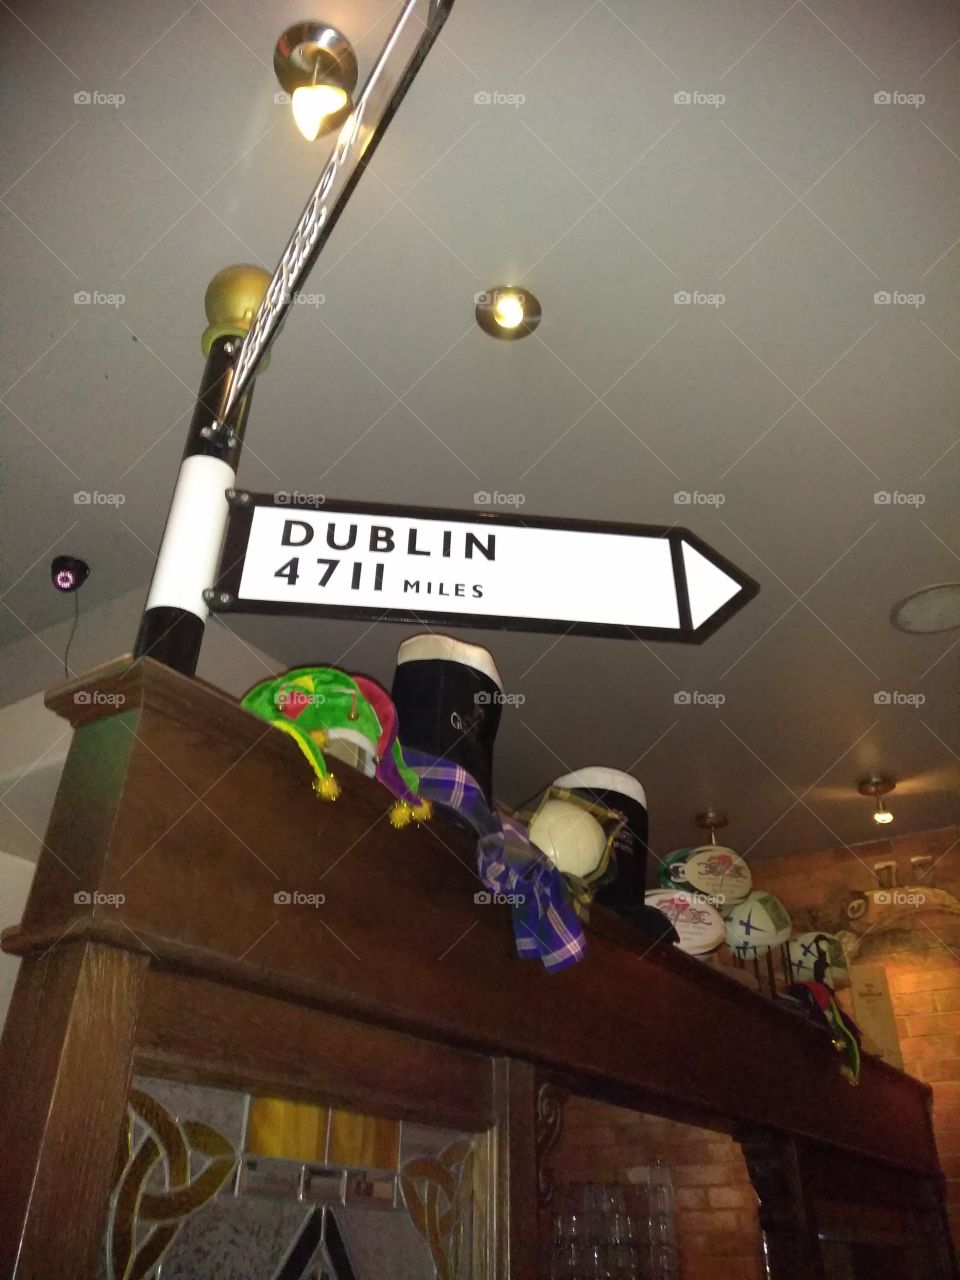 At the Irish Pub